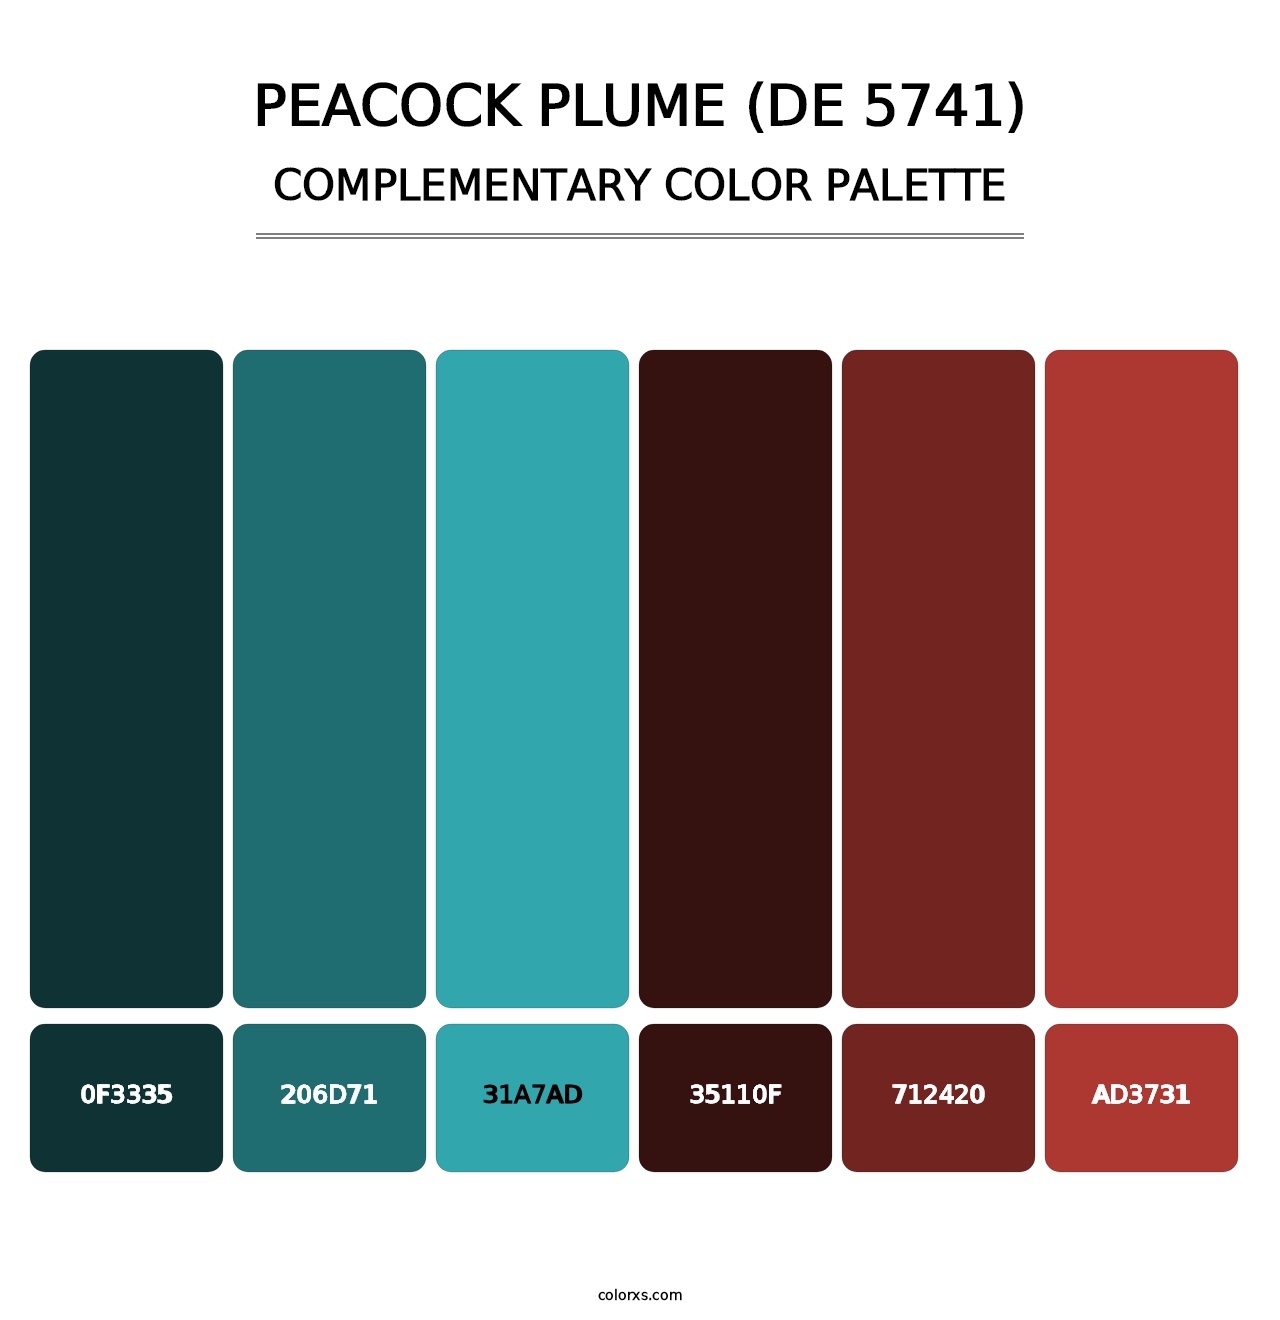 Peacock Plume (DE 5741) - Complementary Color Palette